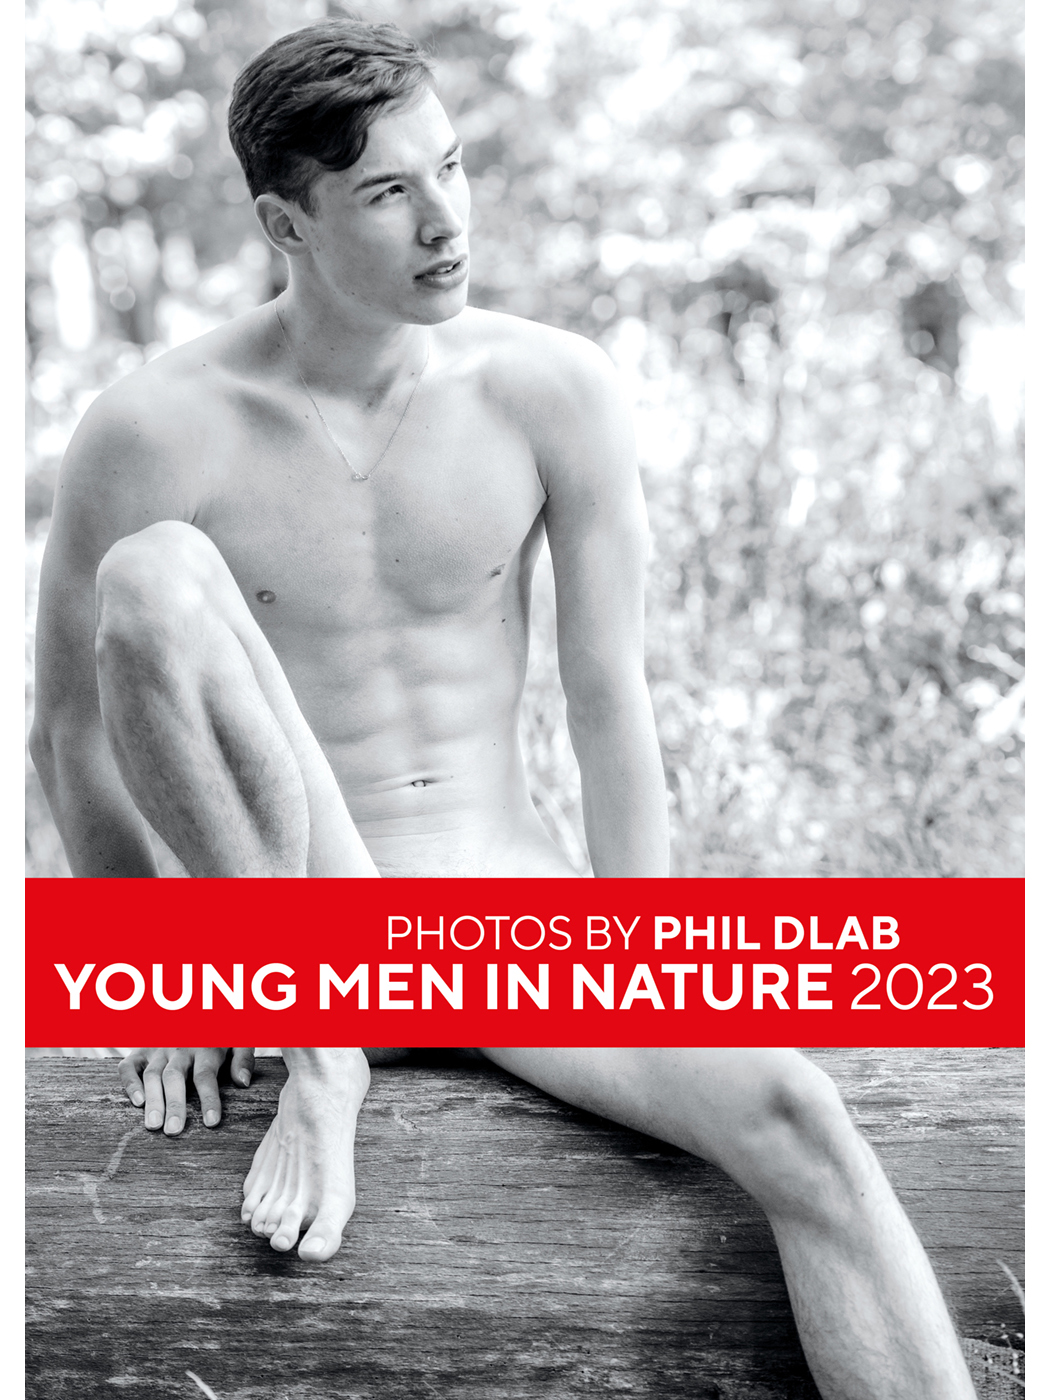 Dlab Young Men in Nature Kalender 2023 